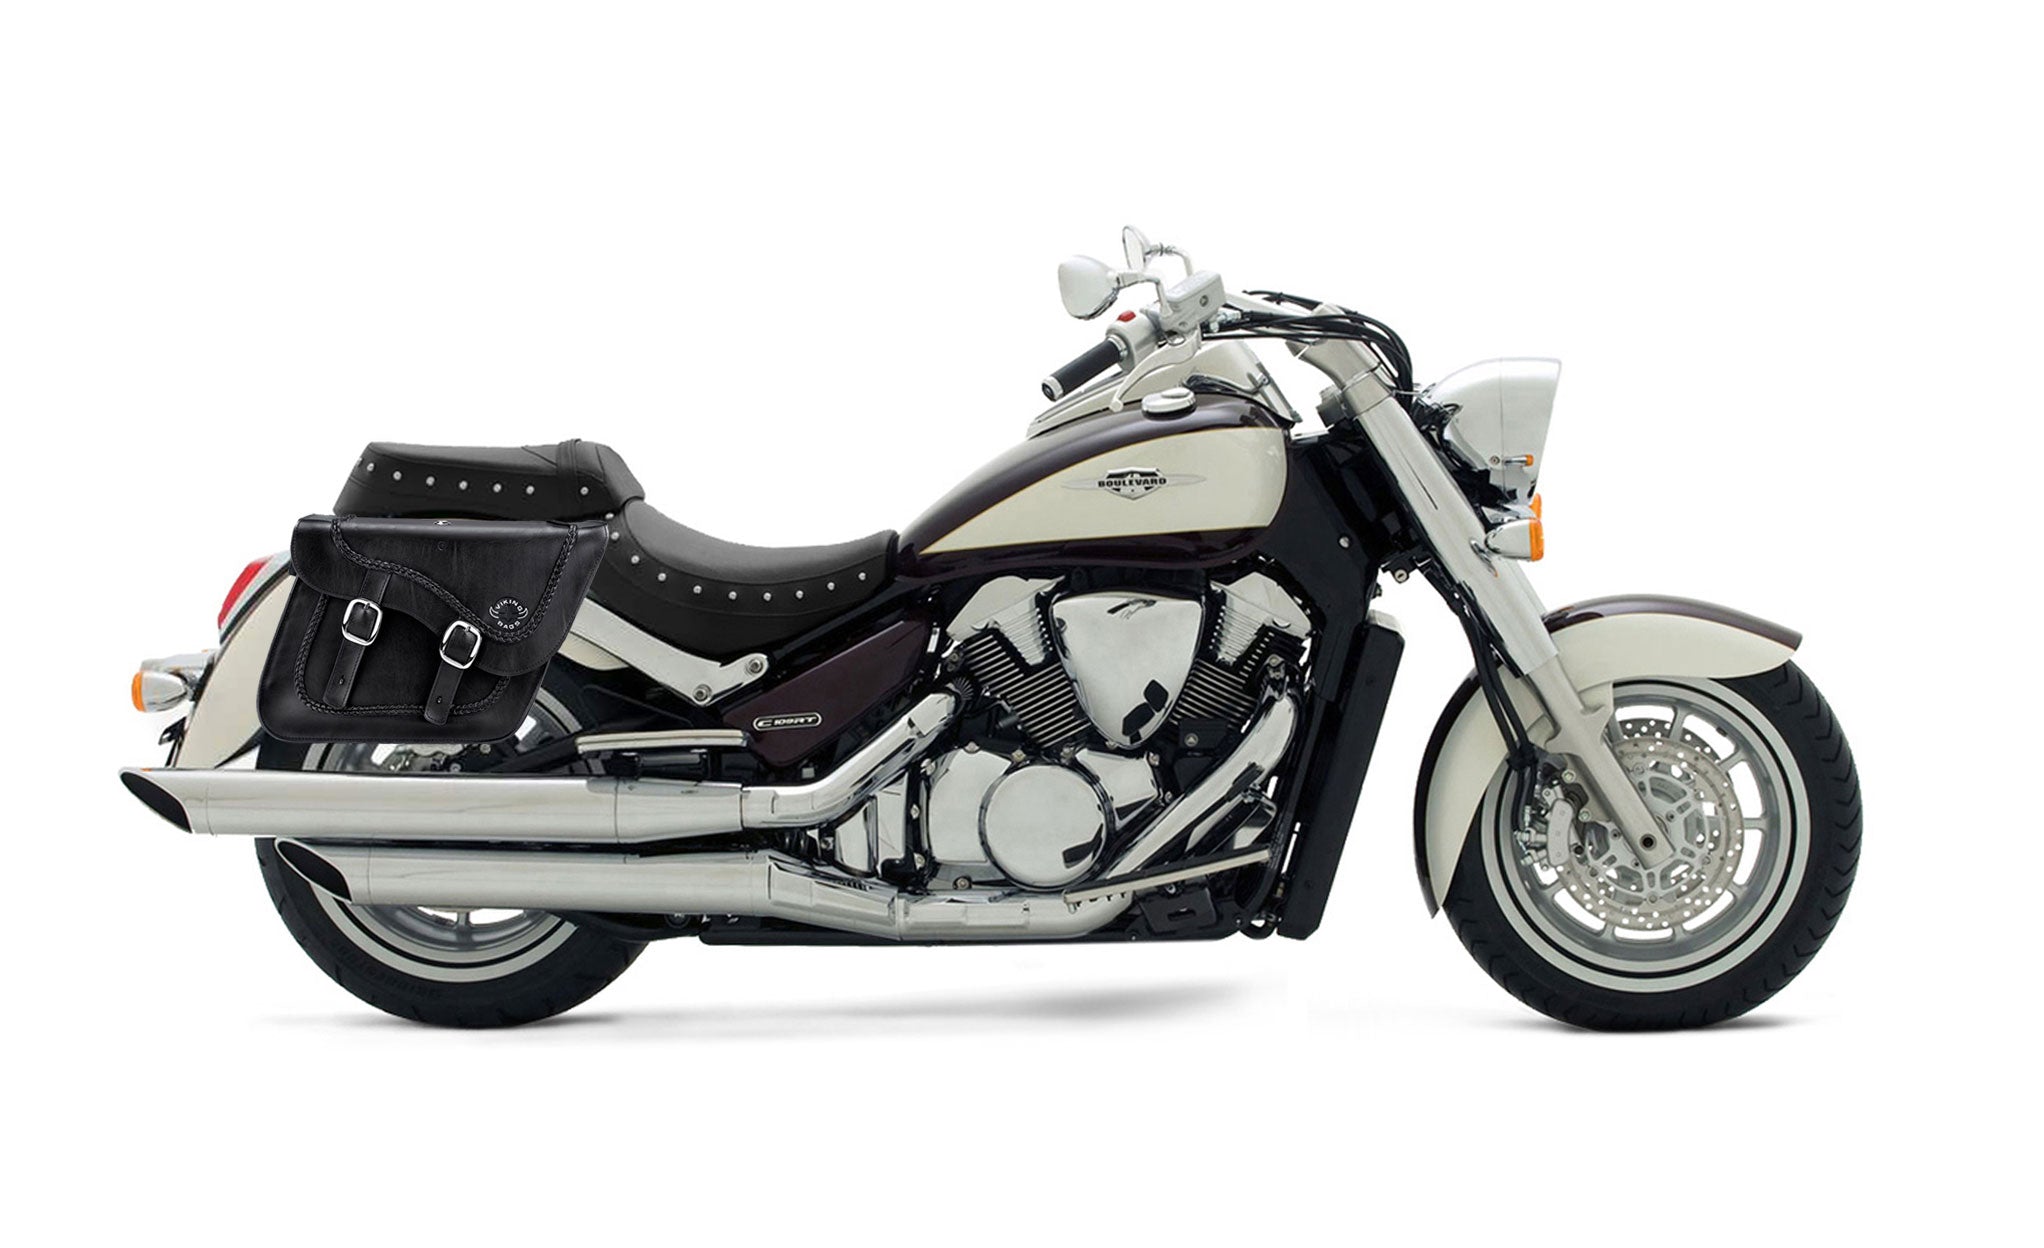 Viking Americano Suzuki Boulevard C109 Braided Large Leather Motorcycle Saddlebags on Bike Photo @expand